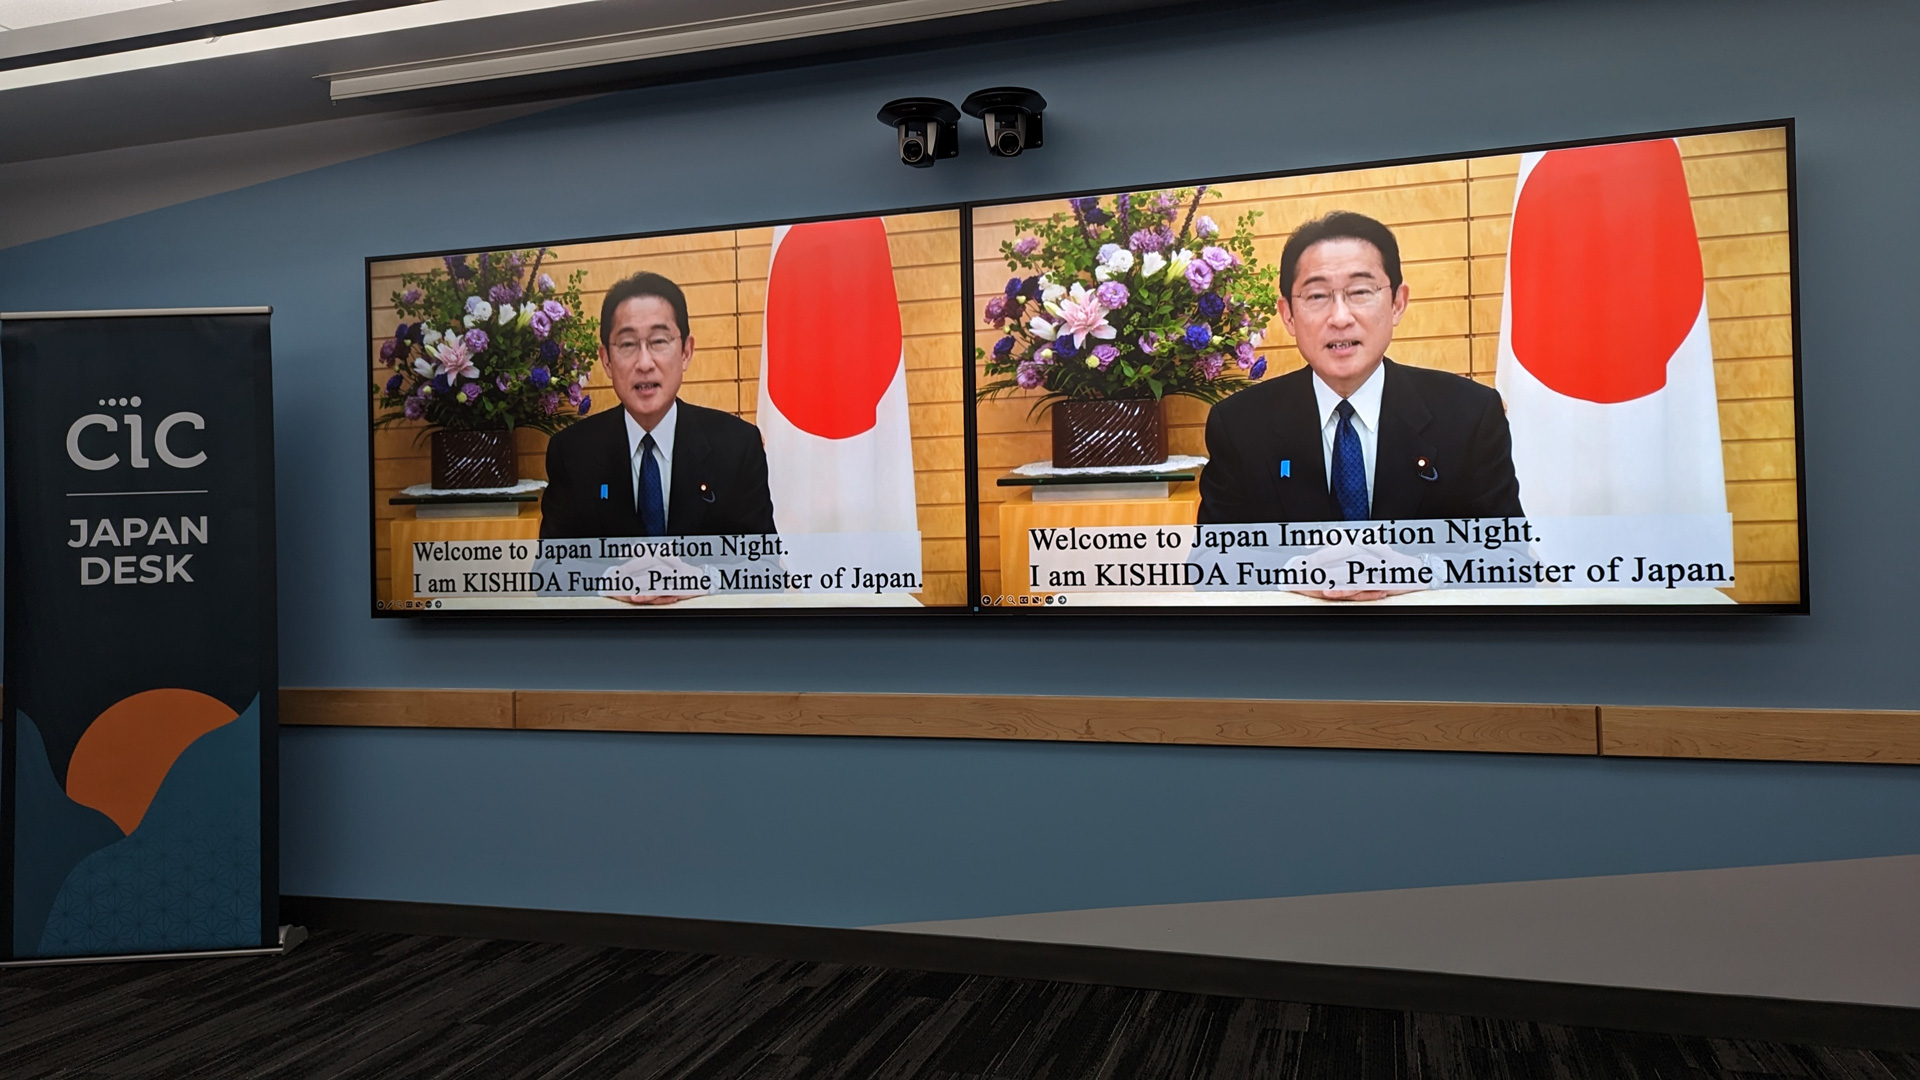 Prime Minister Kishida's video message